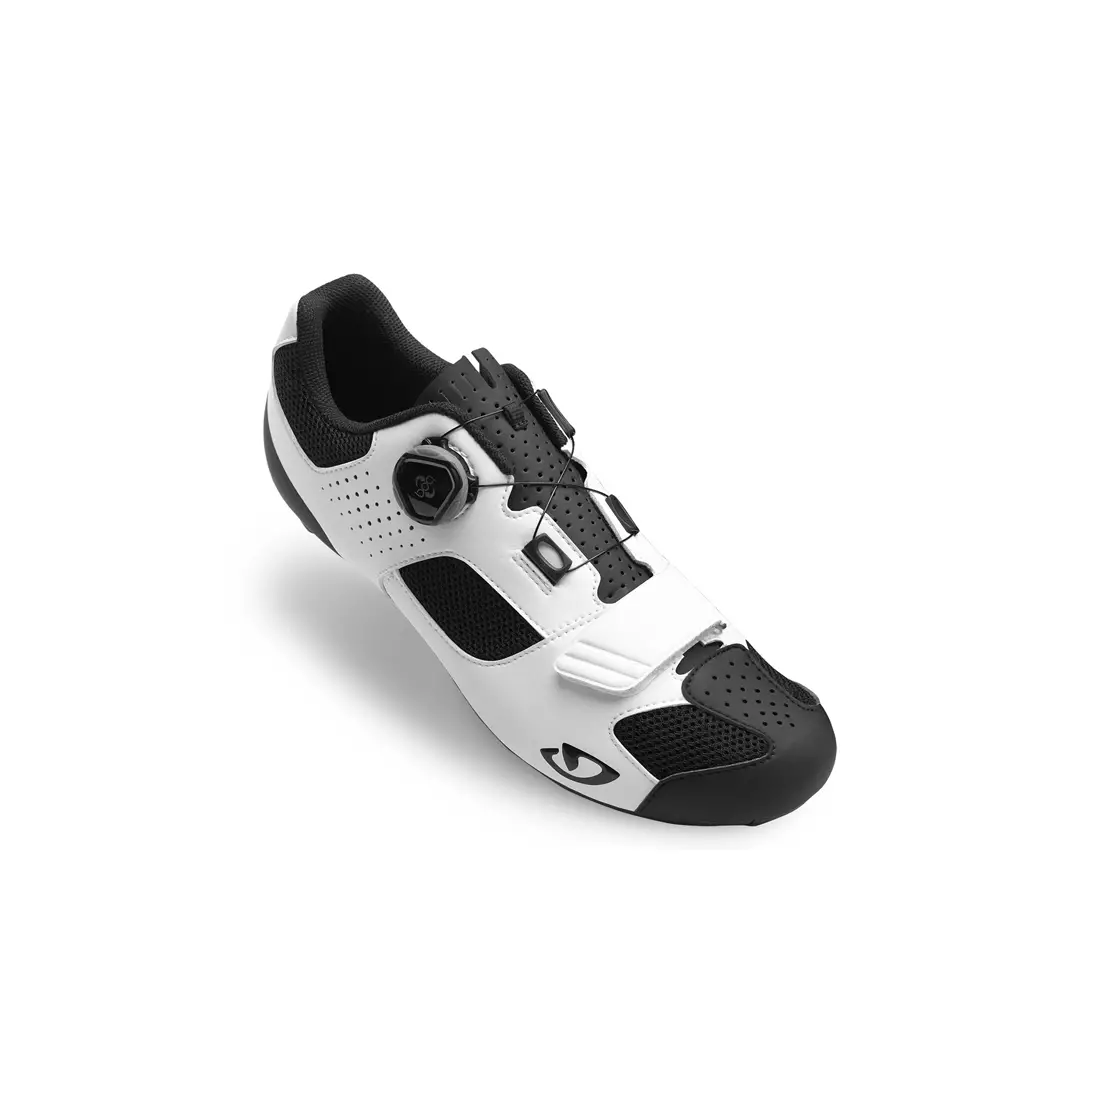 Pánska cyklistická obuv GIRO TRANS BOA white black 